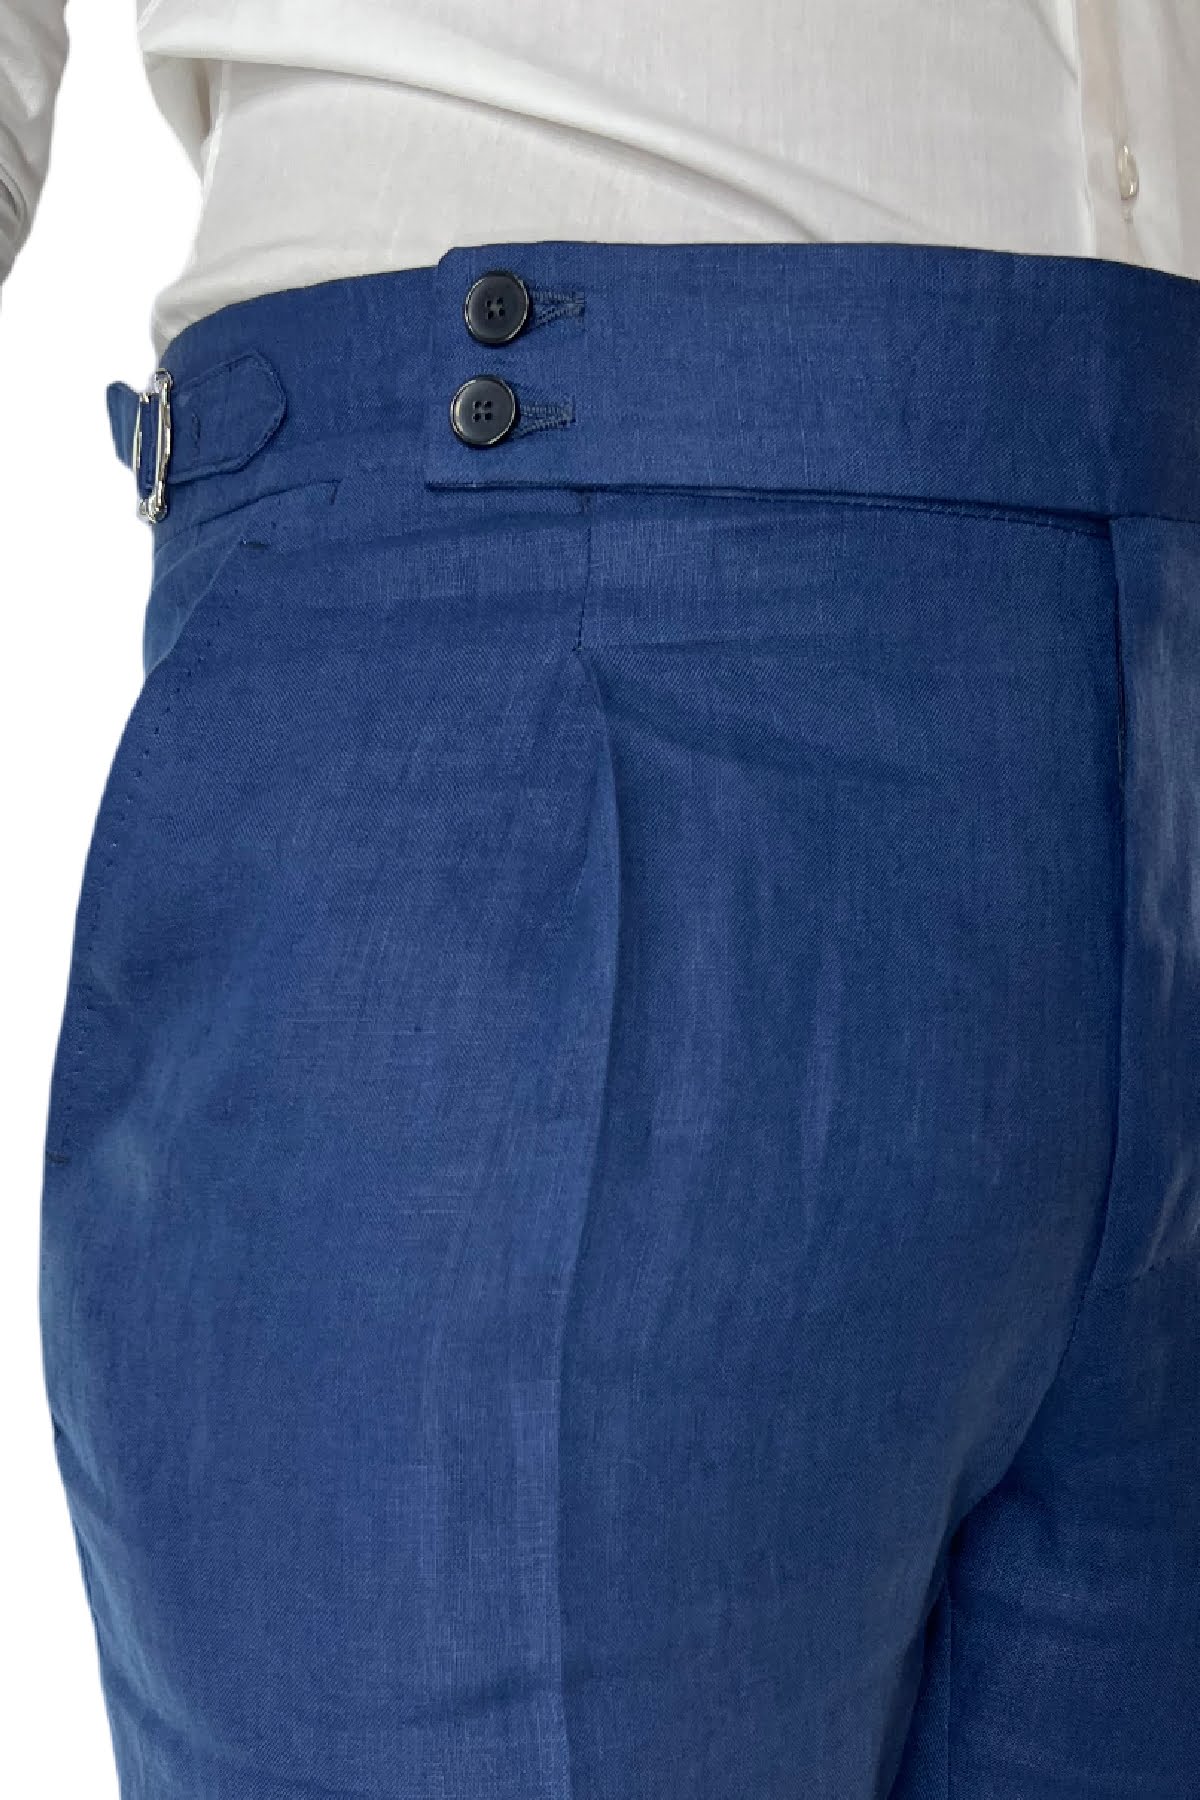 Pantalone uomo royal blu in lino 100% vita alta con pinces fibbie laterali e risvolto 4cm